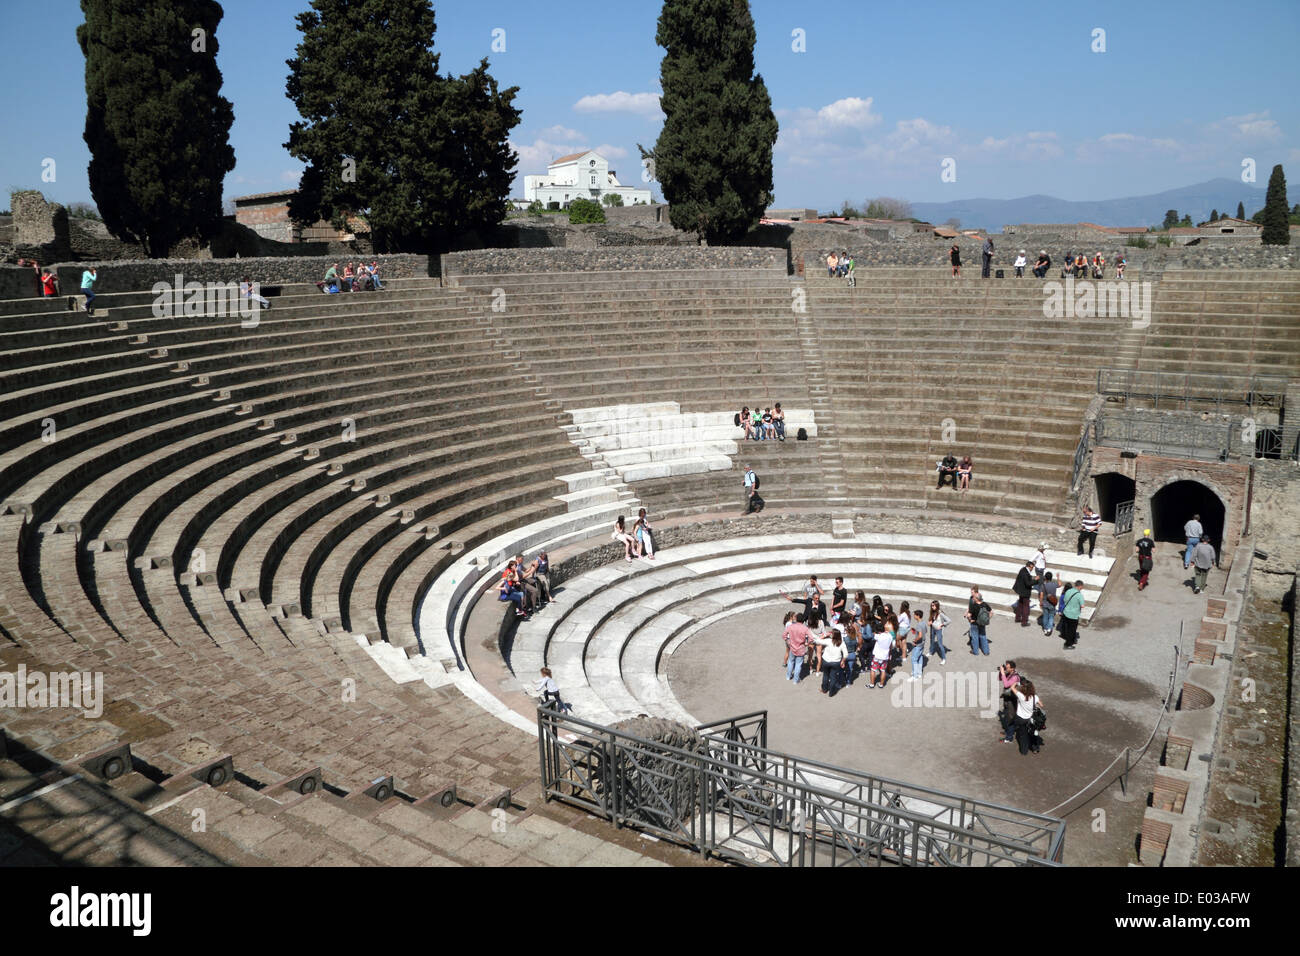 Teatro Grande, Great Theatre, Pompeii, Italy Stock Photo - Alamy